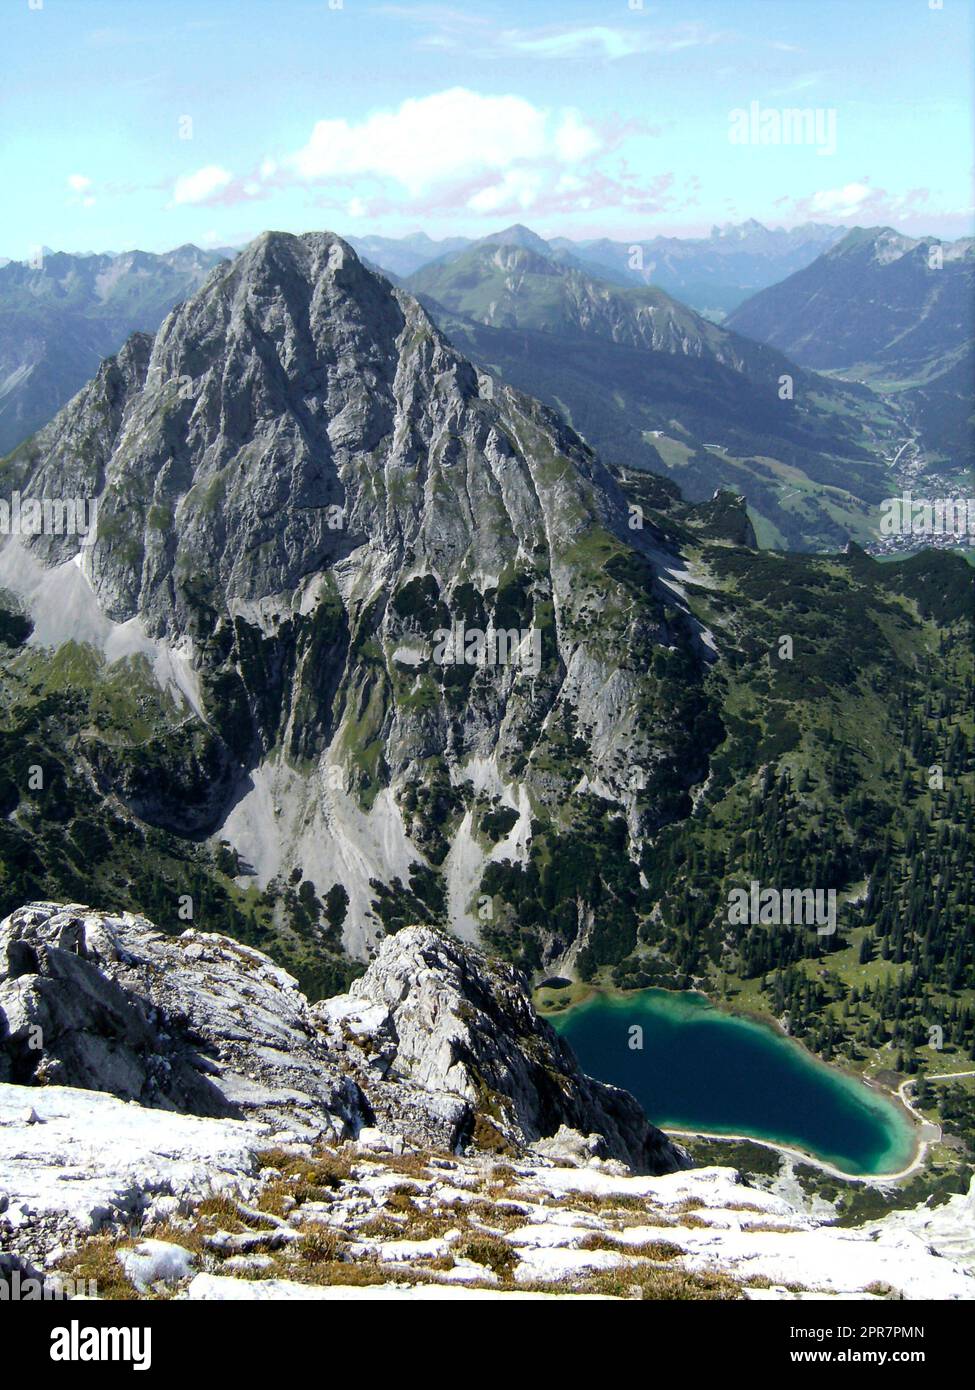 Via ferrata at high mountain lake Seebensee, Tajakopf mountain, Tyrol, Austria Stock Photo